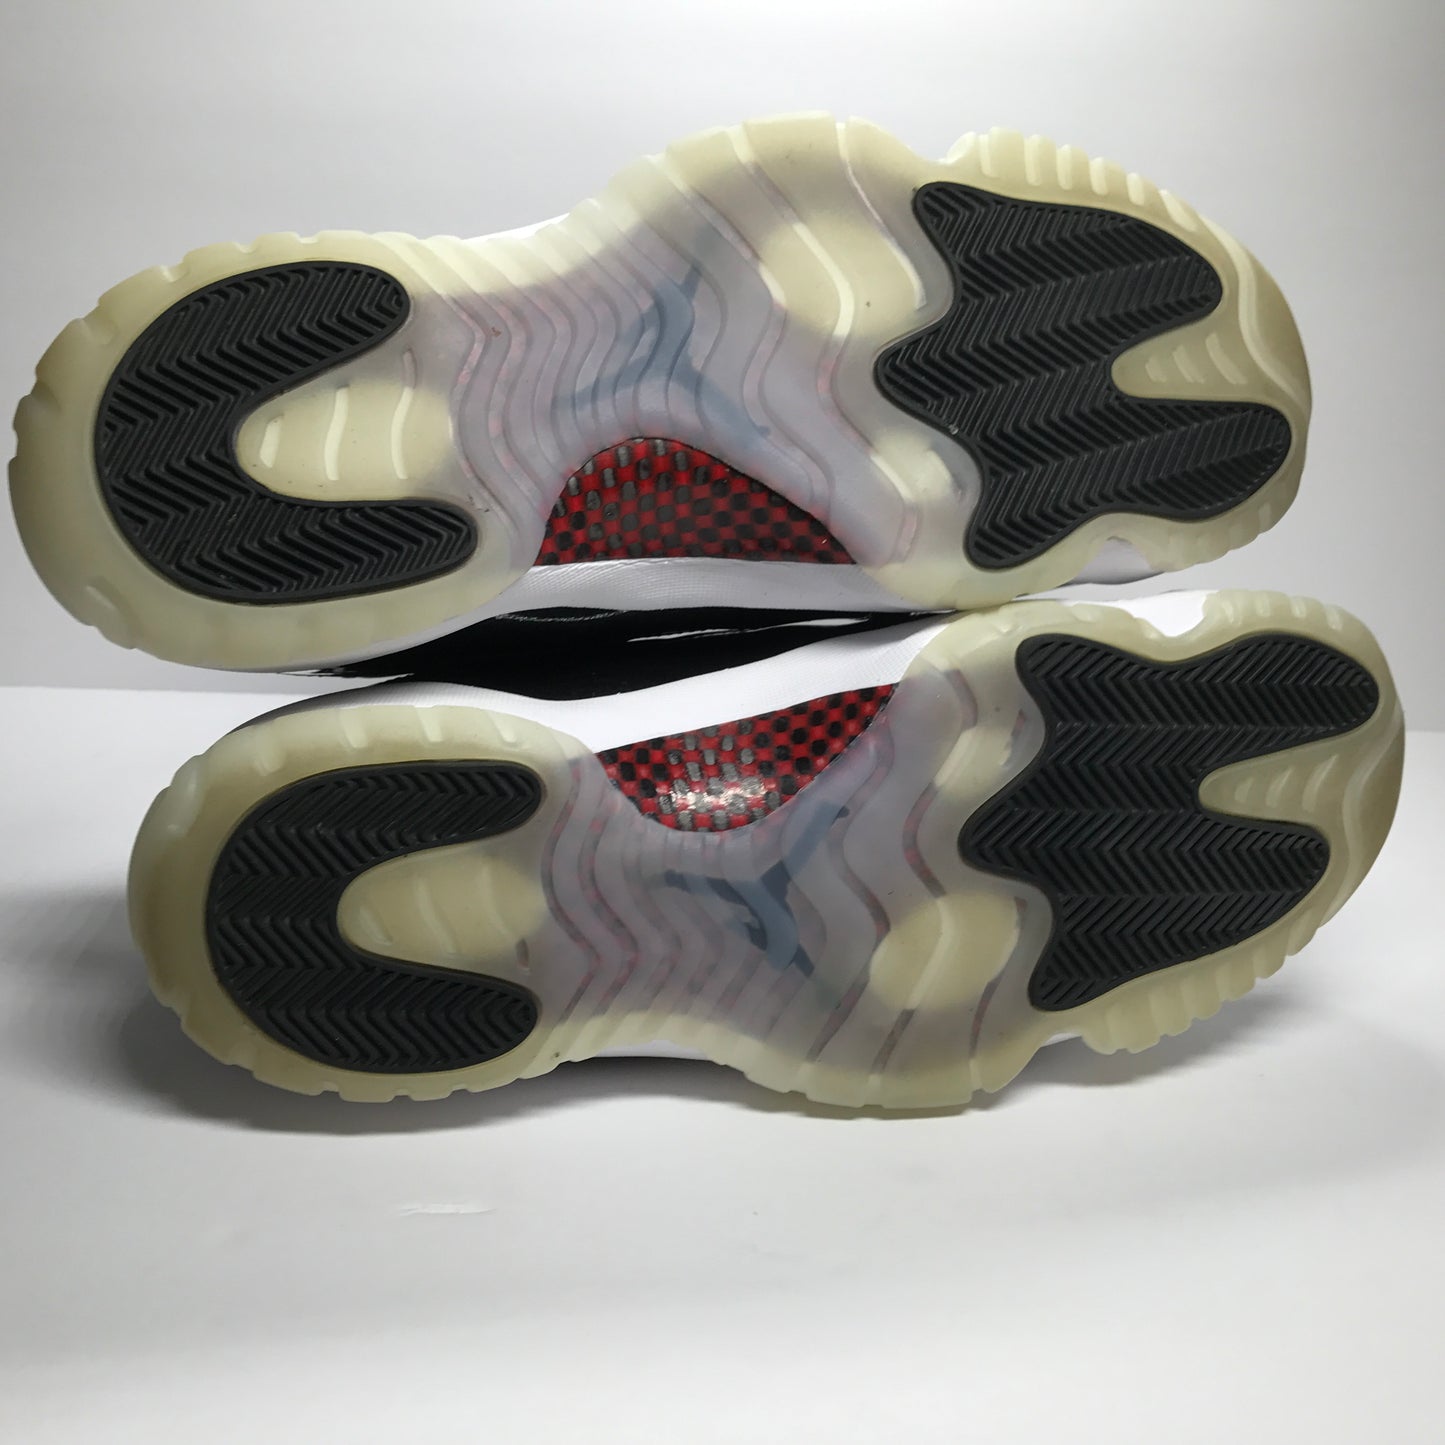 Nike Air Jordan 11 XI Retro 72-10 Size 11.5